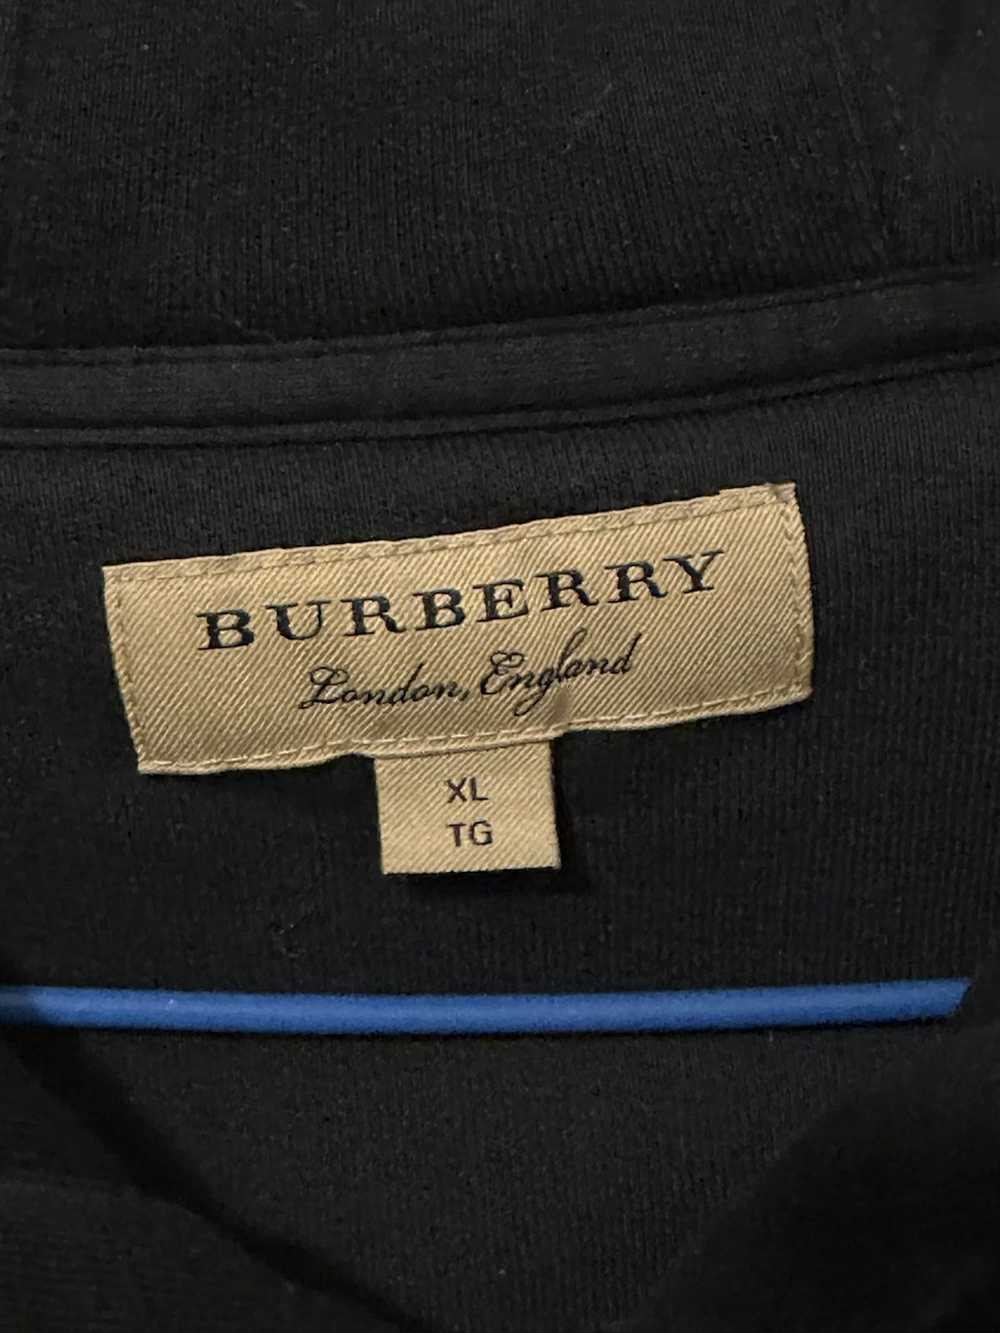 Burberry Burberry zip up hoodie - image 5